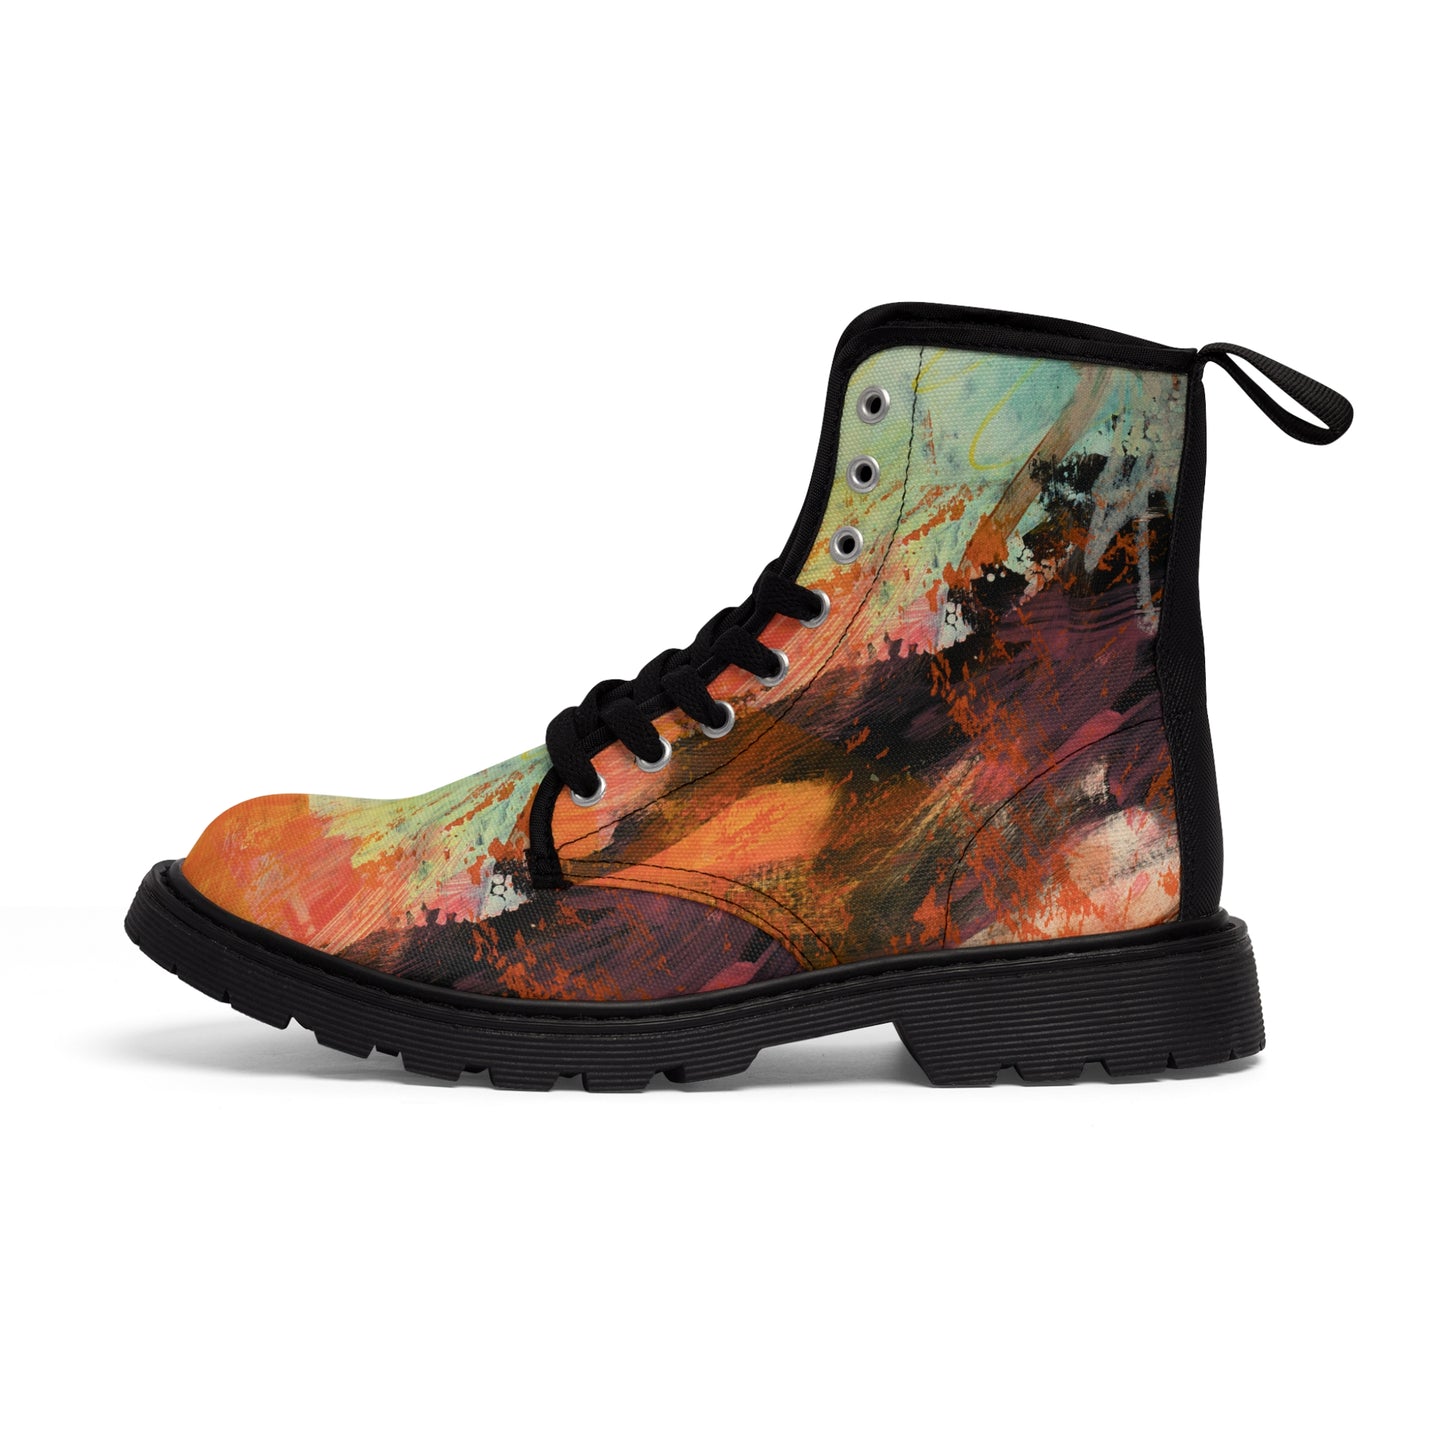 Men's Canvas Boots - 02870 US 10.5 Black sole